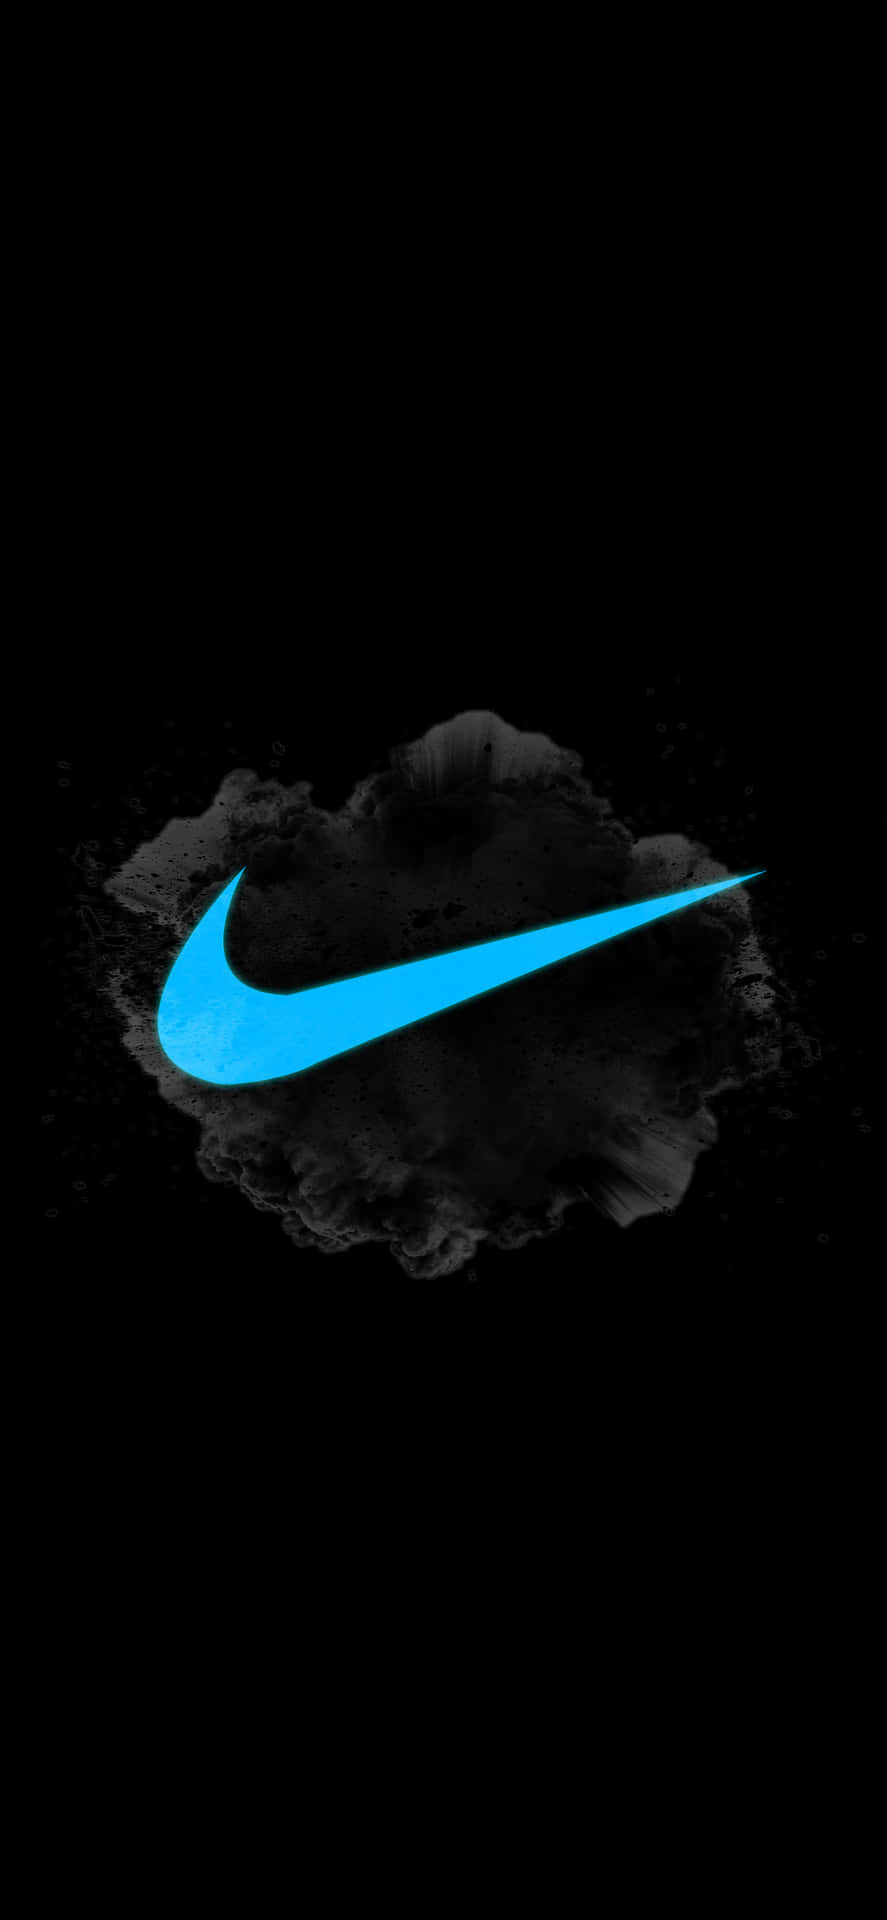 Logotipode Nike En Azul. Fondo de pantalla